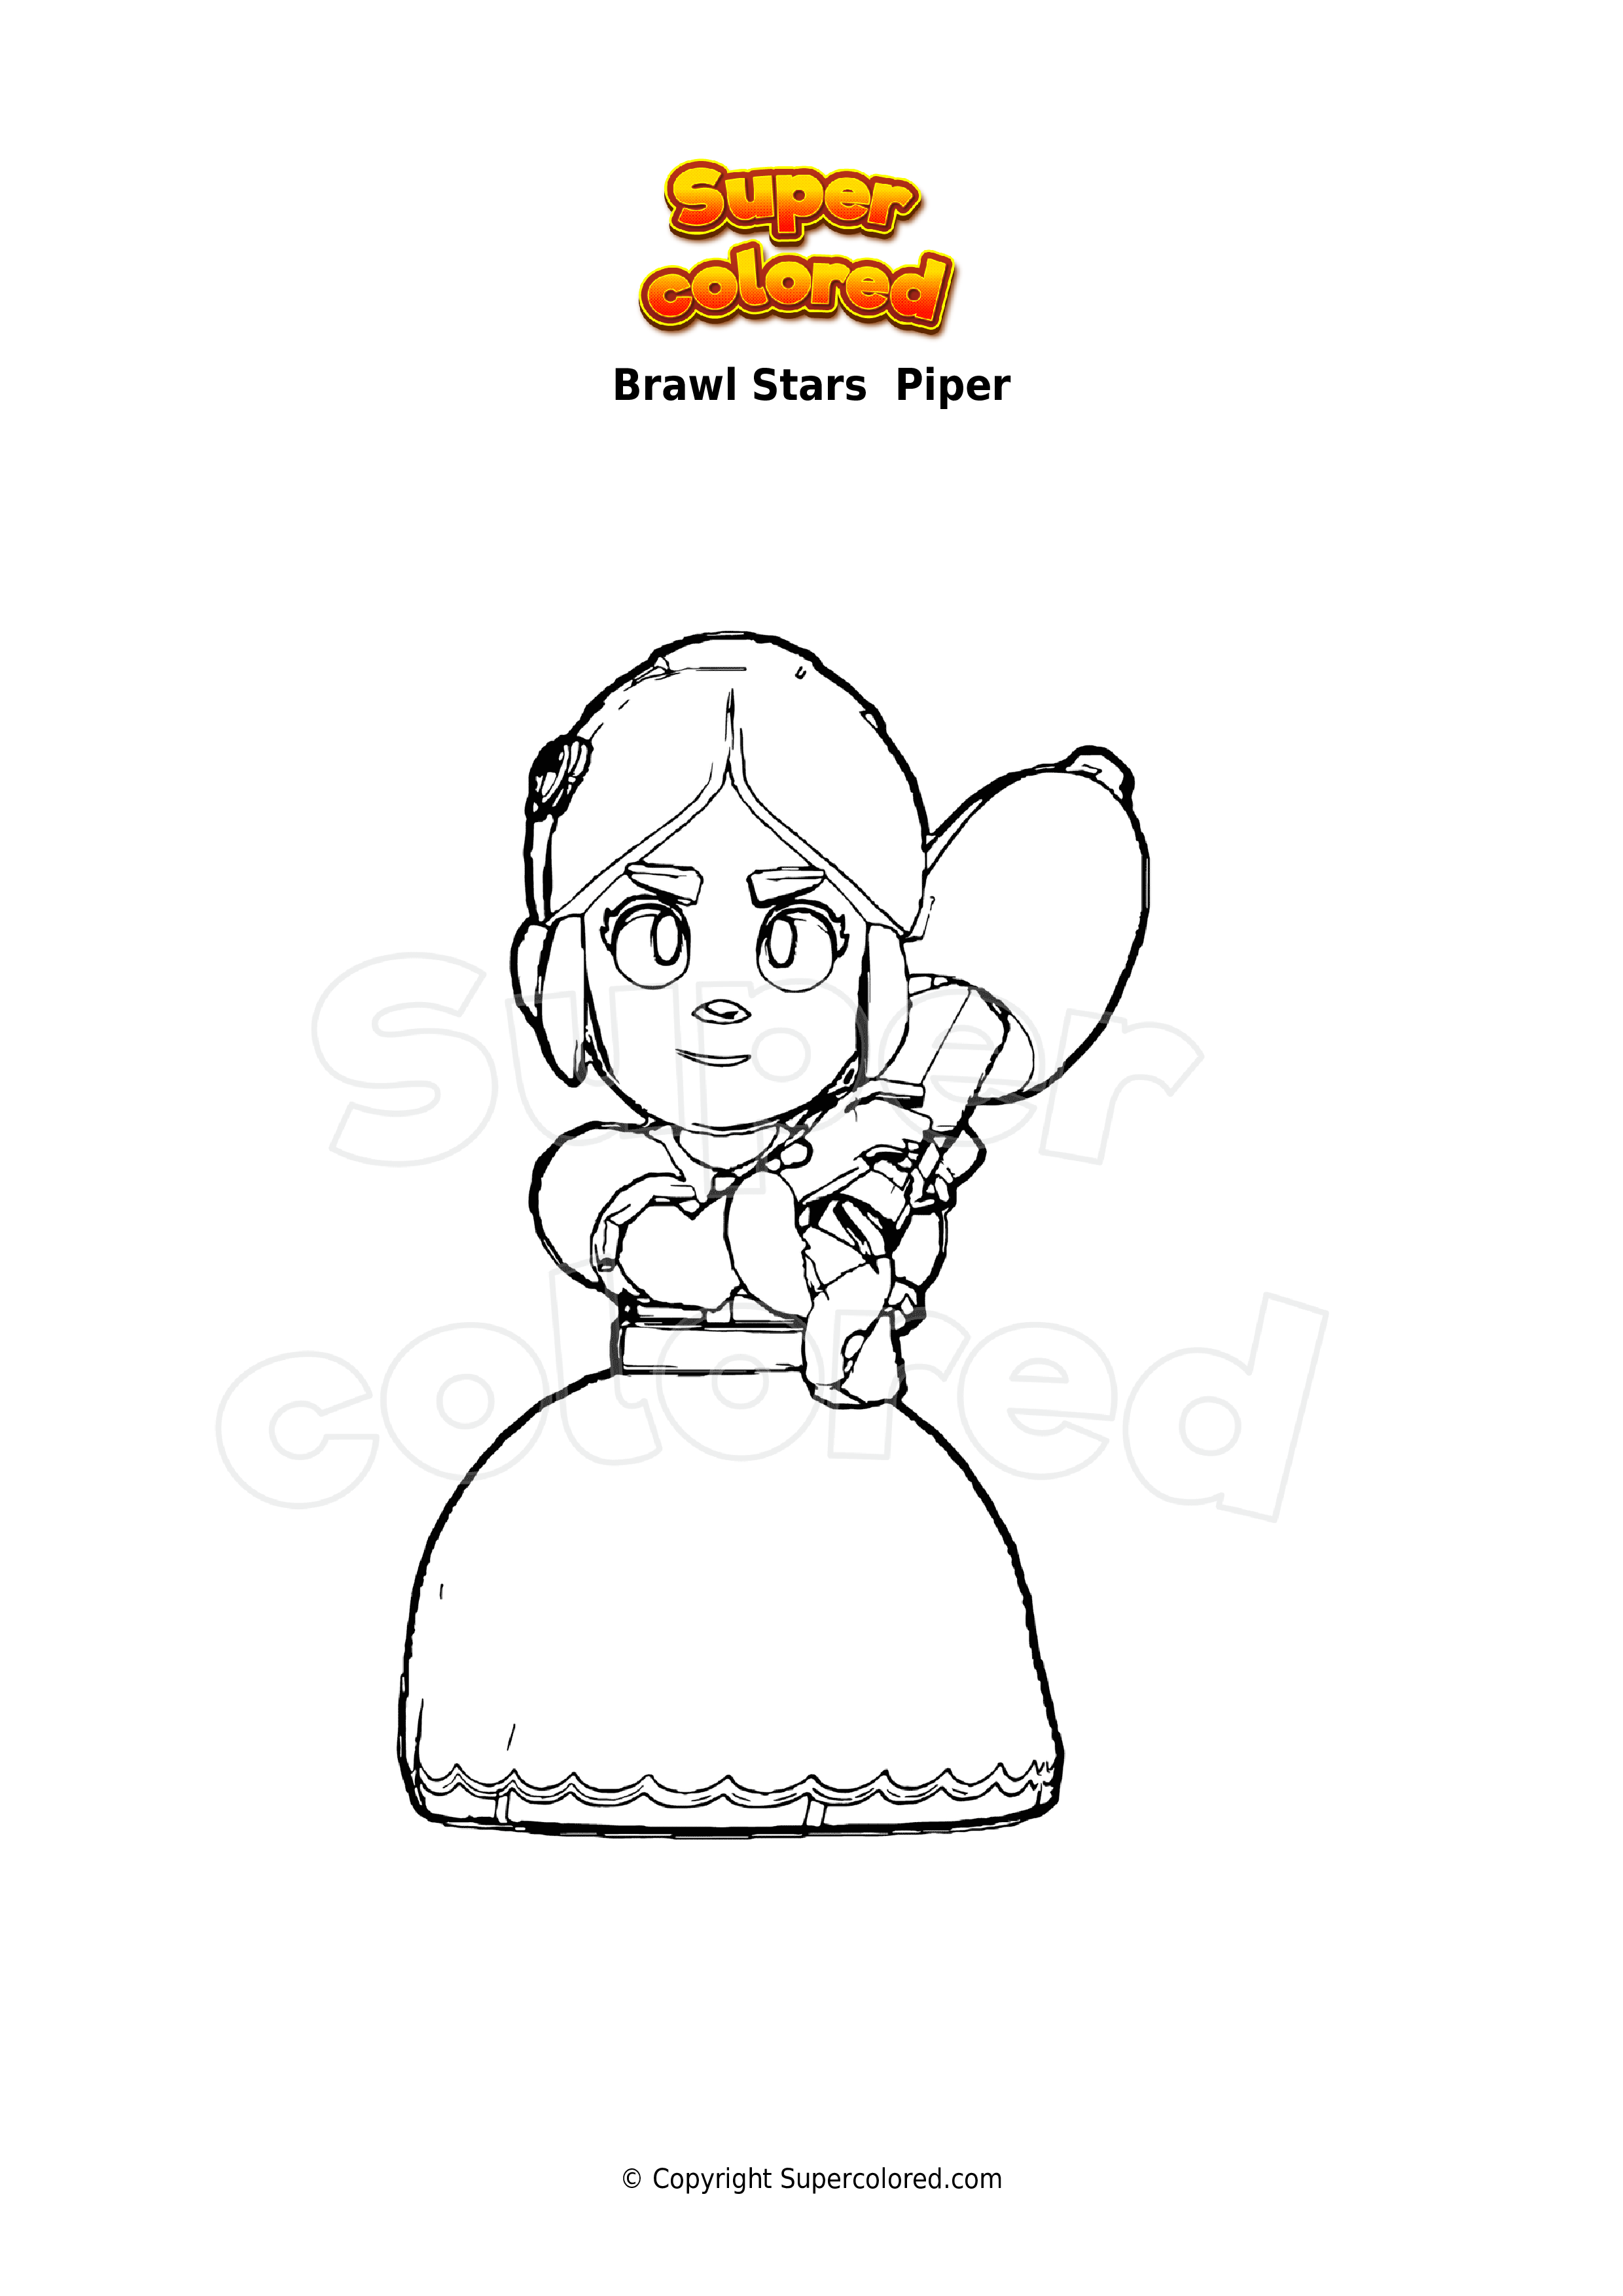 Dibujo Para Colorear Brawl Stars Piper Supercolored Com - brawl stars personaje piper